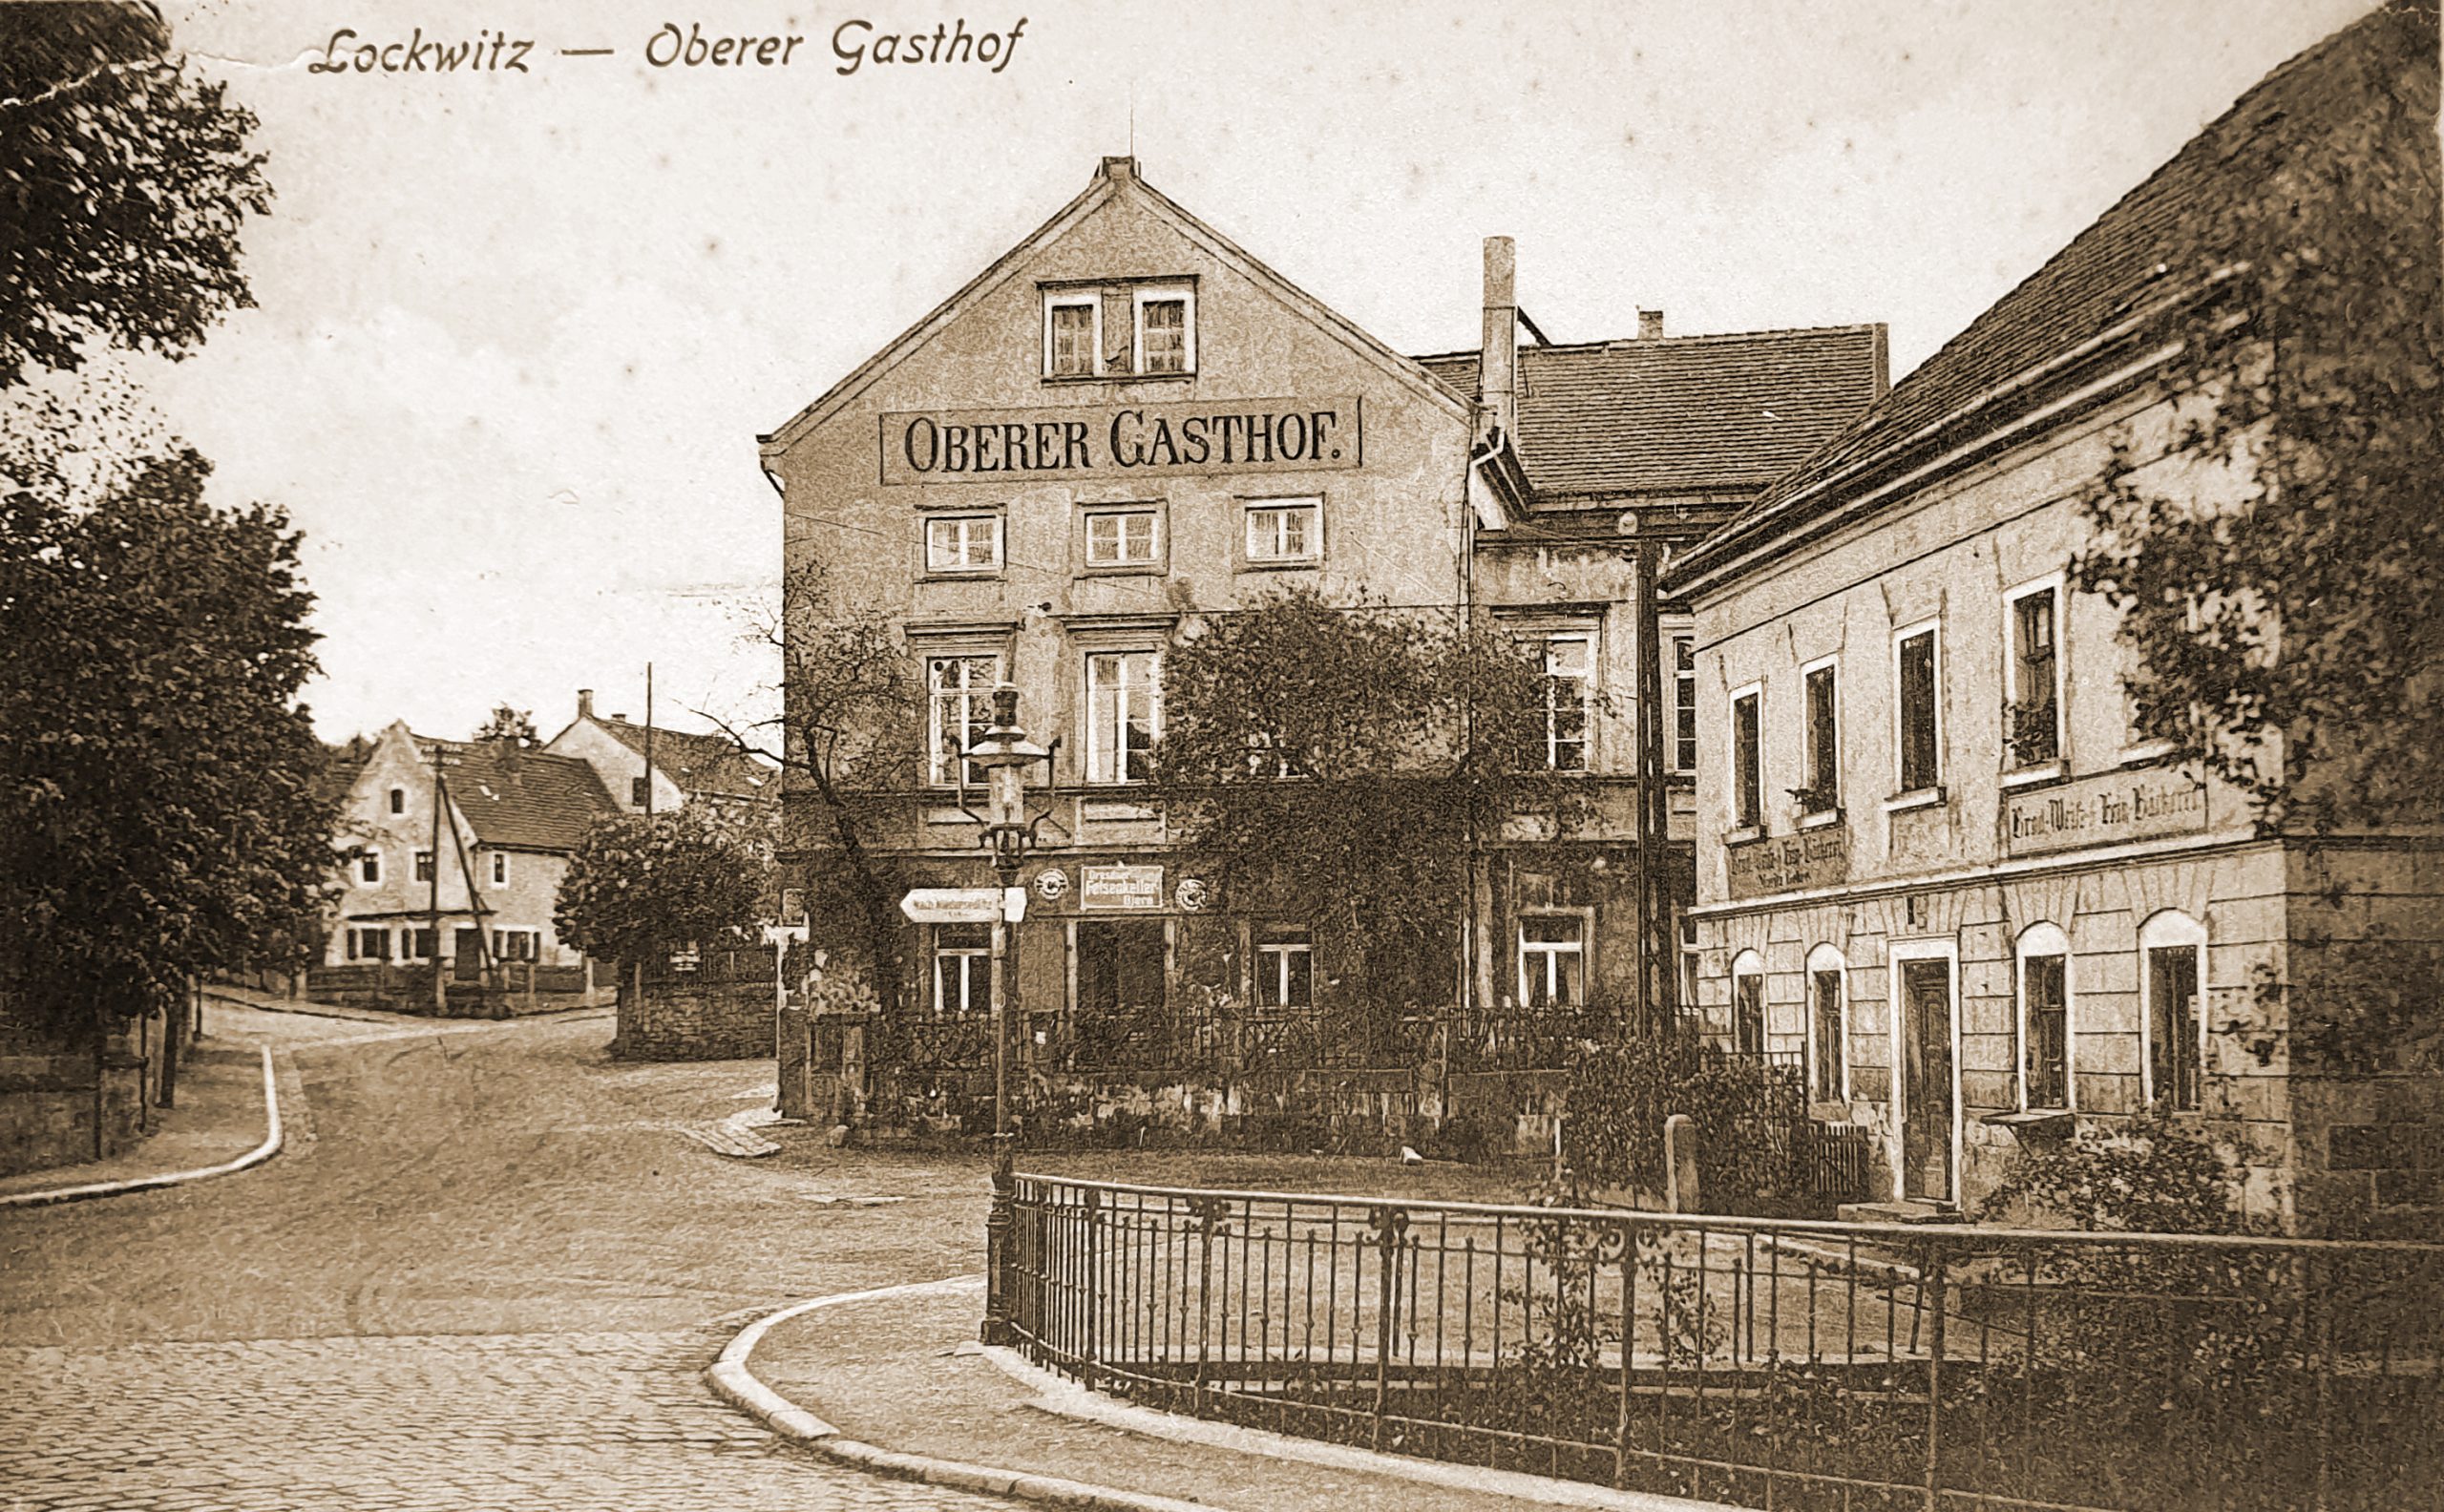 Oberer Gasthof Lockwitz Postkarte